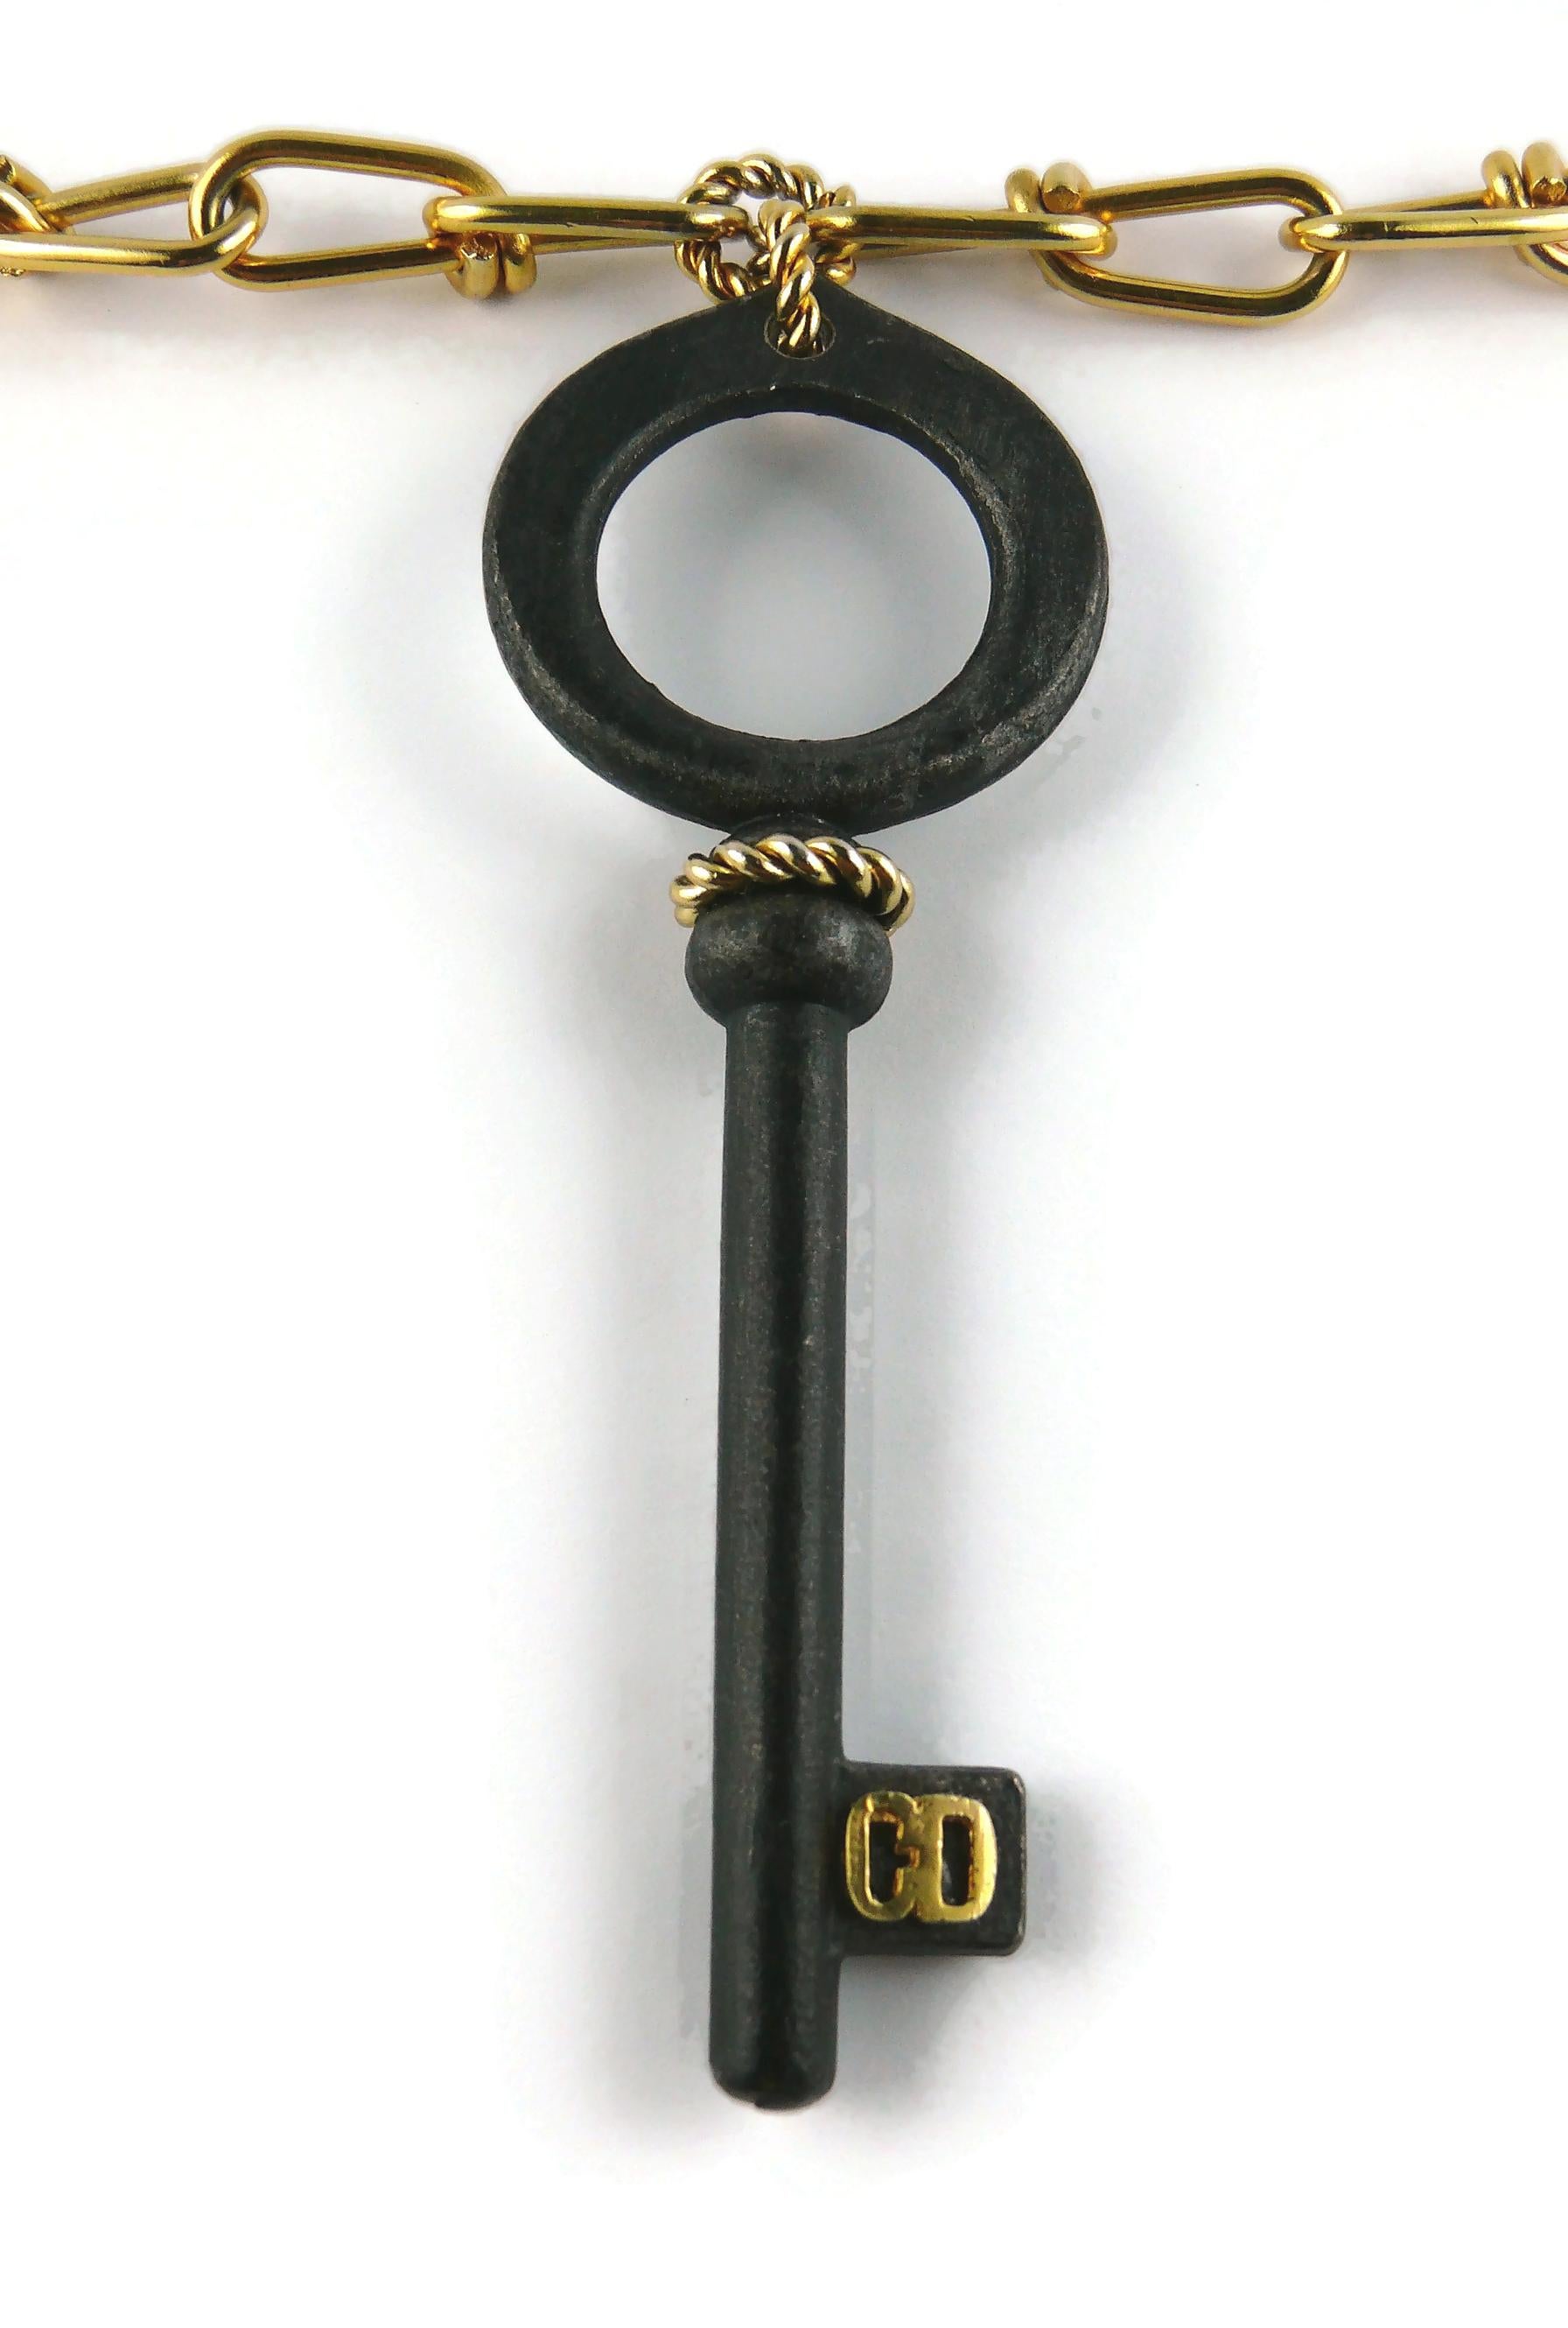 christian key necklace